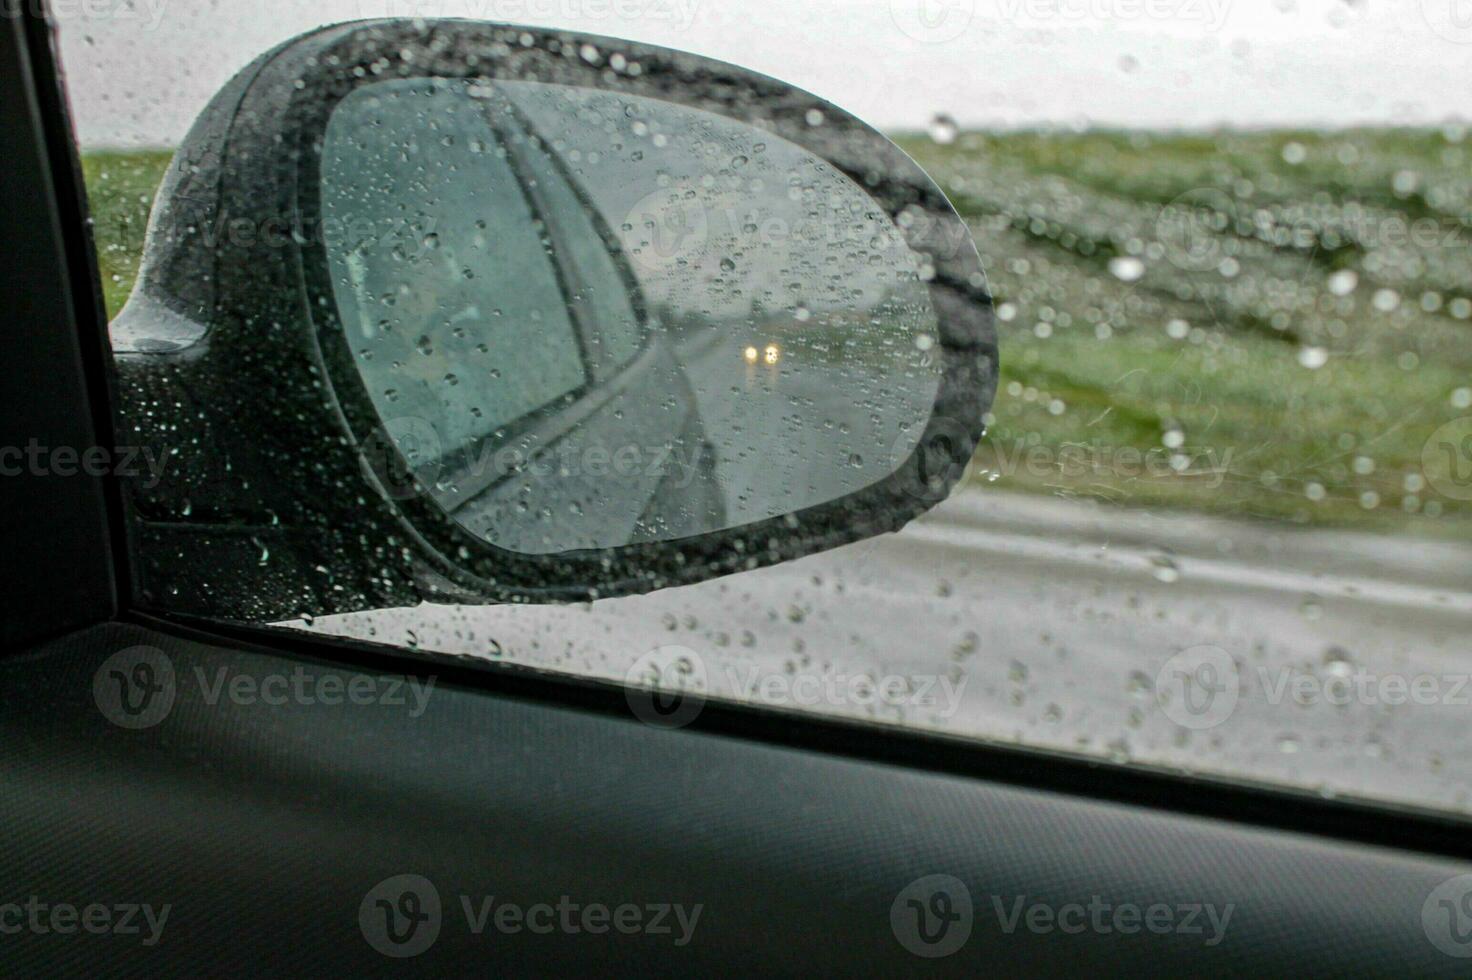 höst bil resa på de regnig motorväg - sida spegel reflektioner, droppar på glas, och bokeh äventyr foto